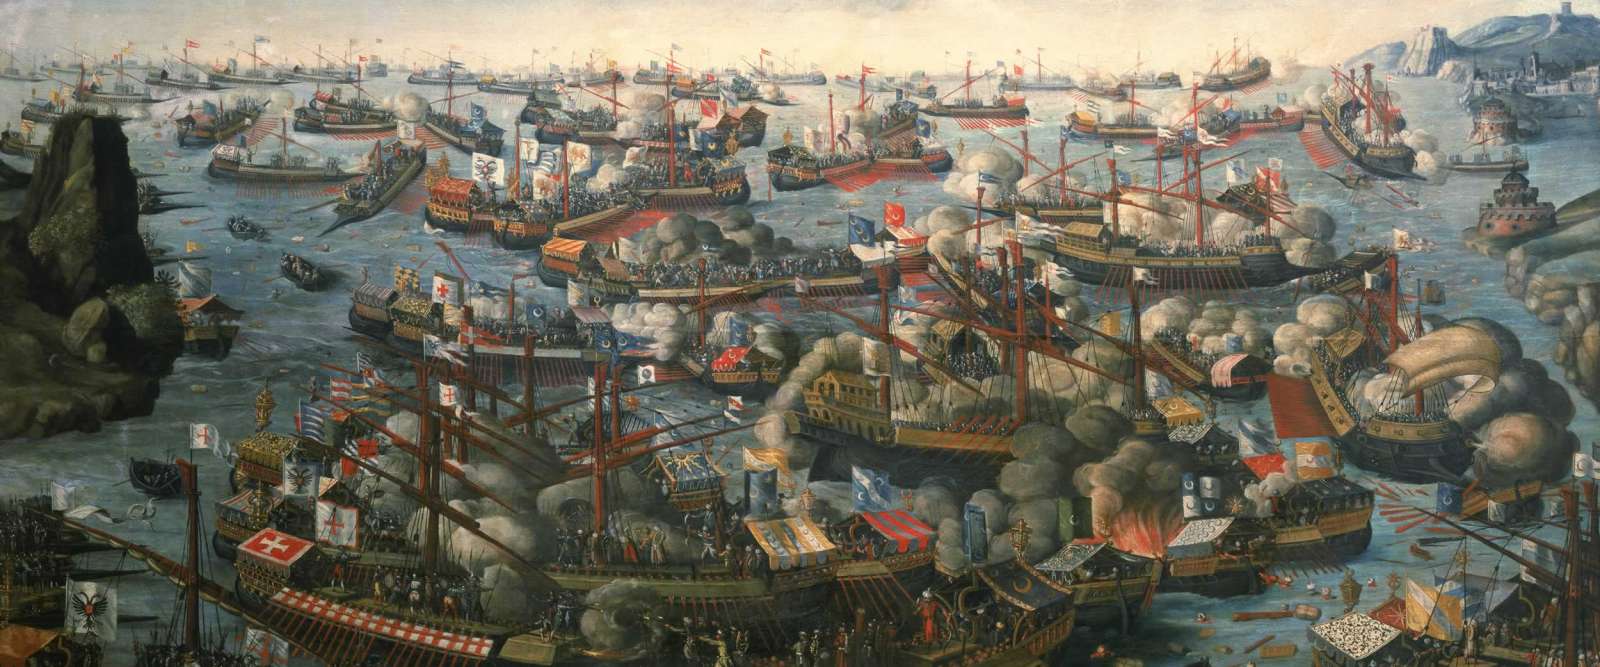 Battle of Lepanto,1571